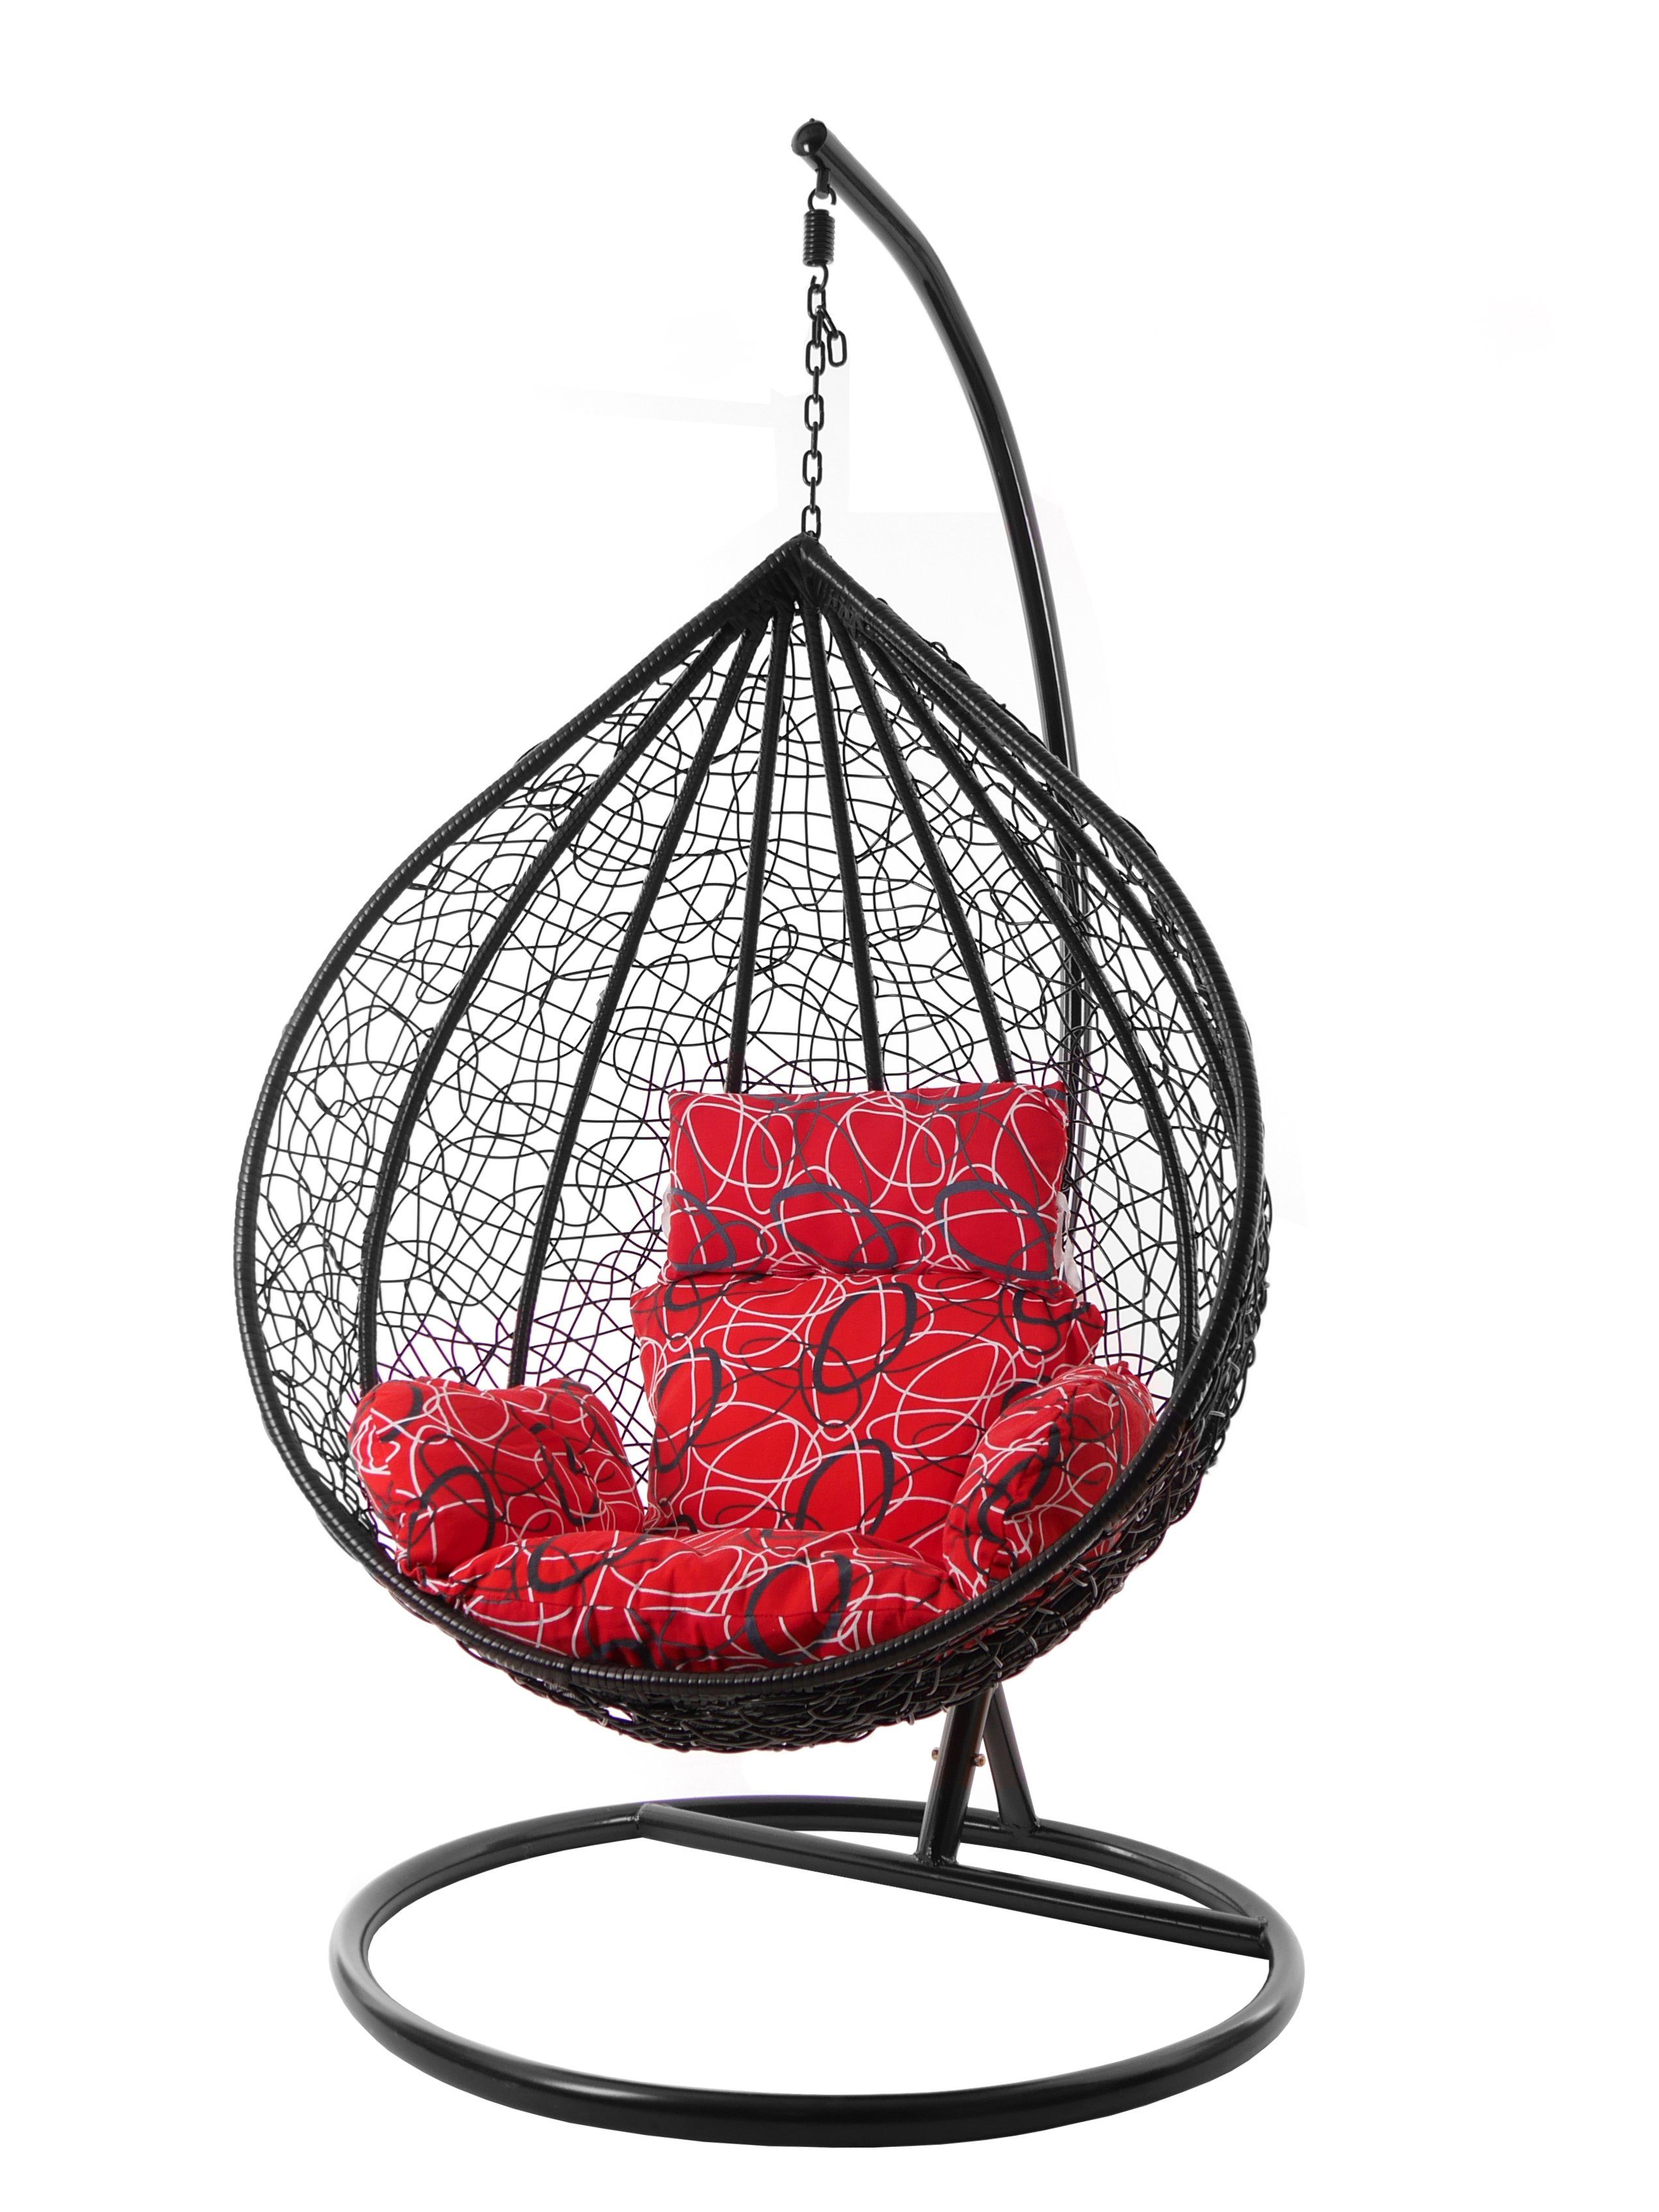 KIDEO Hängesessel Hängesessel MANACOR schwarz, XXL Swing Chair, Hängesessel mit Gestell und Kissen, Nest-Kissen rot gemustert (3088 red frizzy)